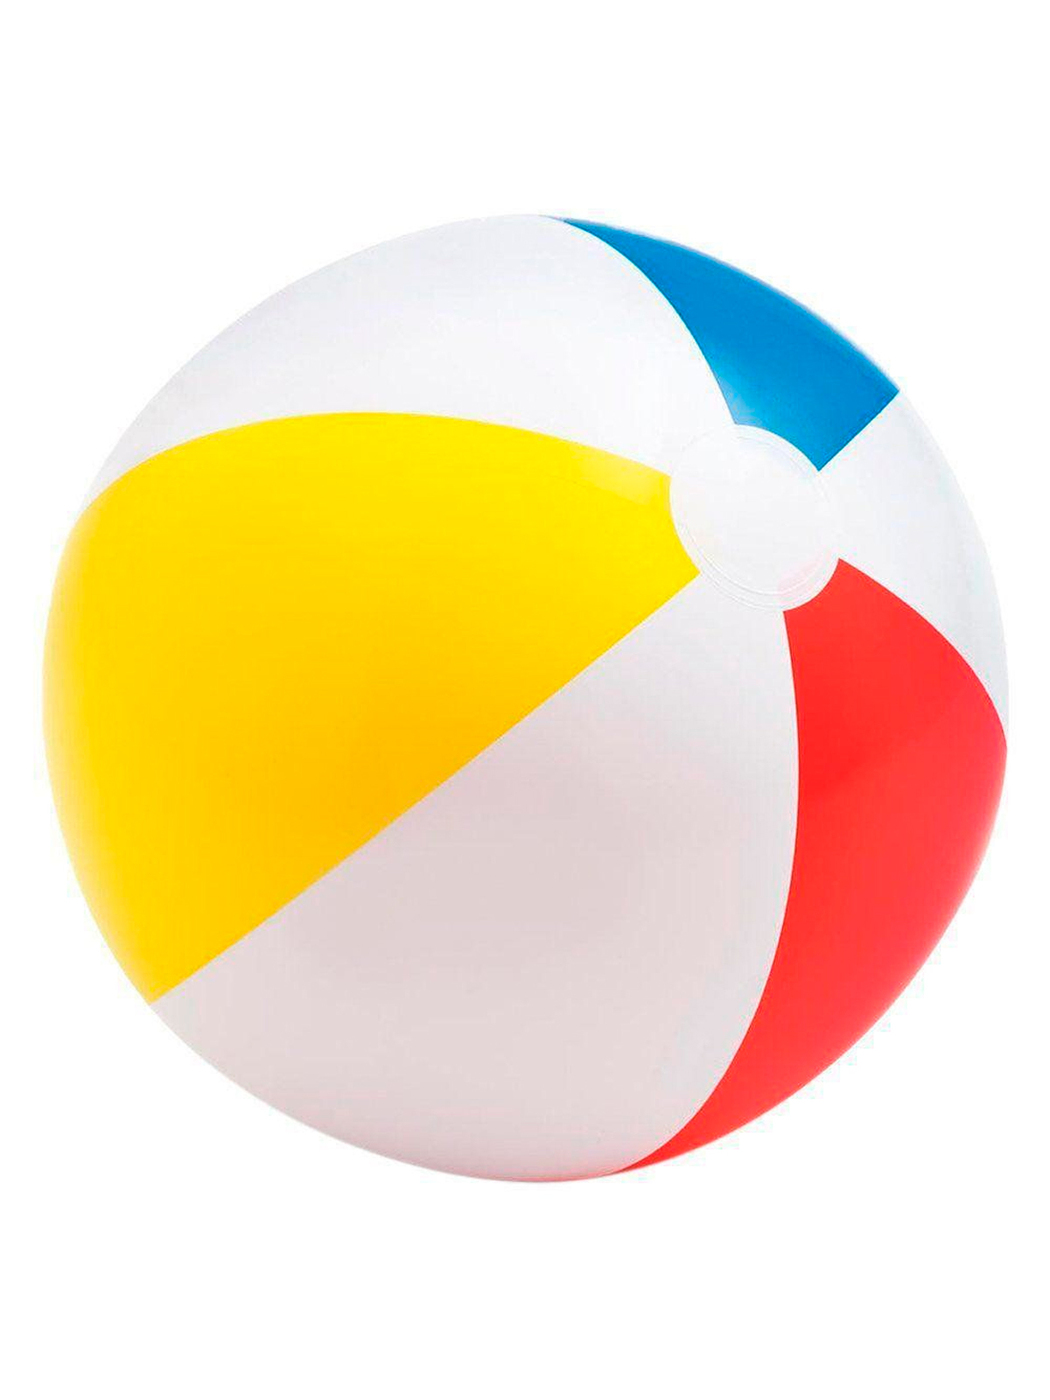 Пляжный мяч 51см, от 3 лет IN-59020 надувной пляжный мяч винни диаметр 51см от 3 лет арт 58025 интекс